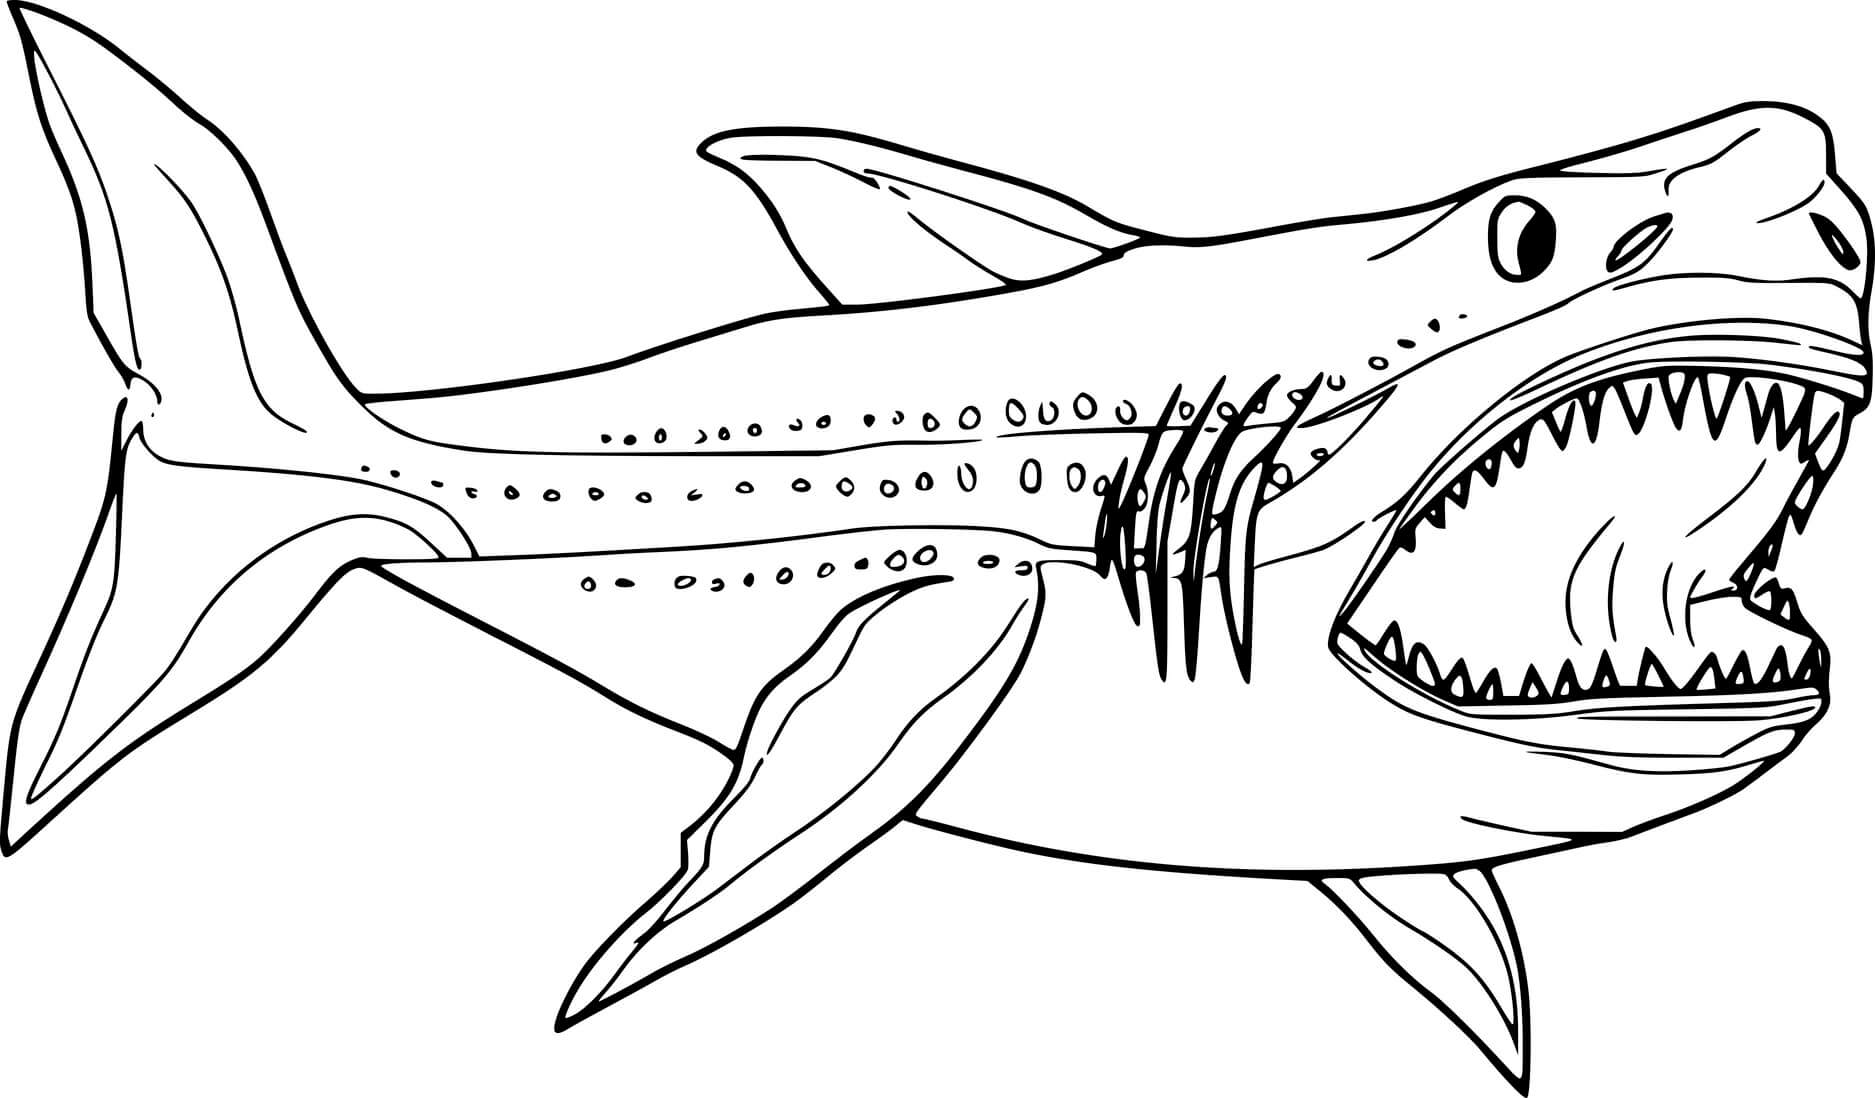 Юмористическая раскраска жир акулы